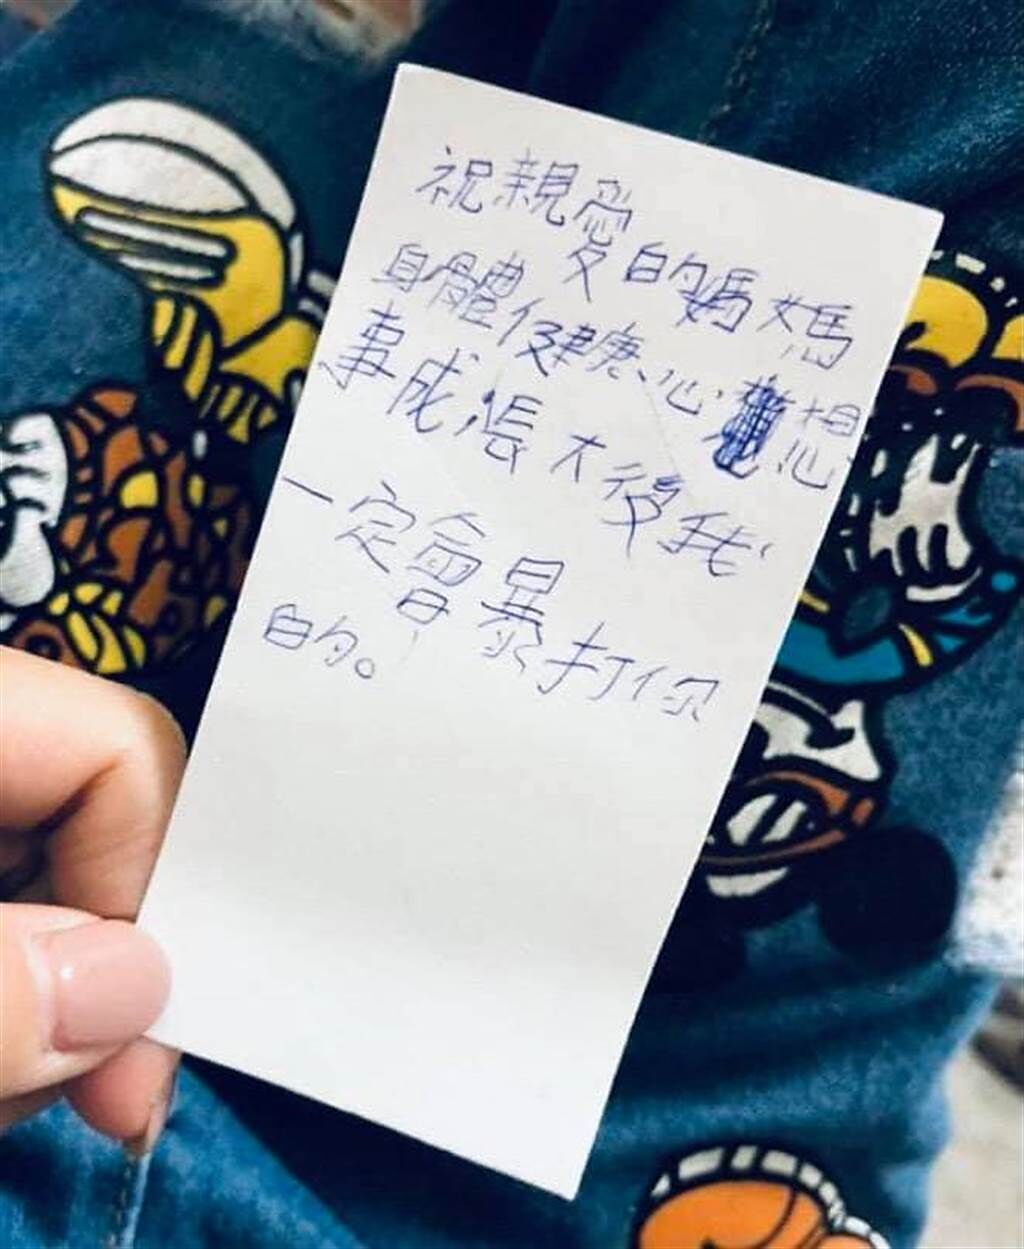 一名女網友貼出一張照片，表示孩子留下溫馨的手寫紙條，但卻因為錯字讓整個意思變了調，讓3萬多名網友笑翻。(圖取自爆廢公社)